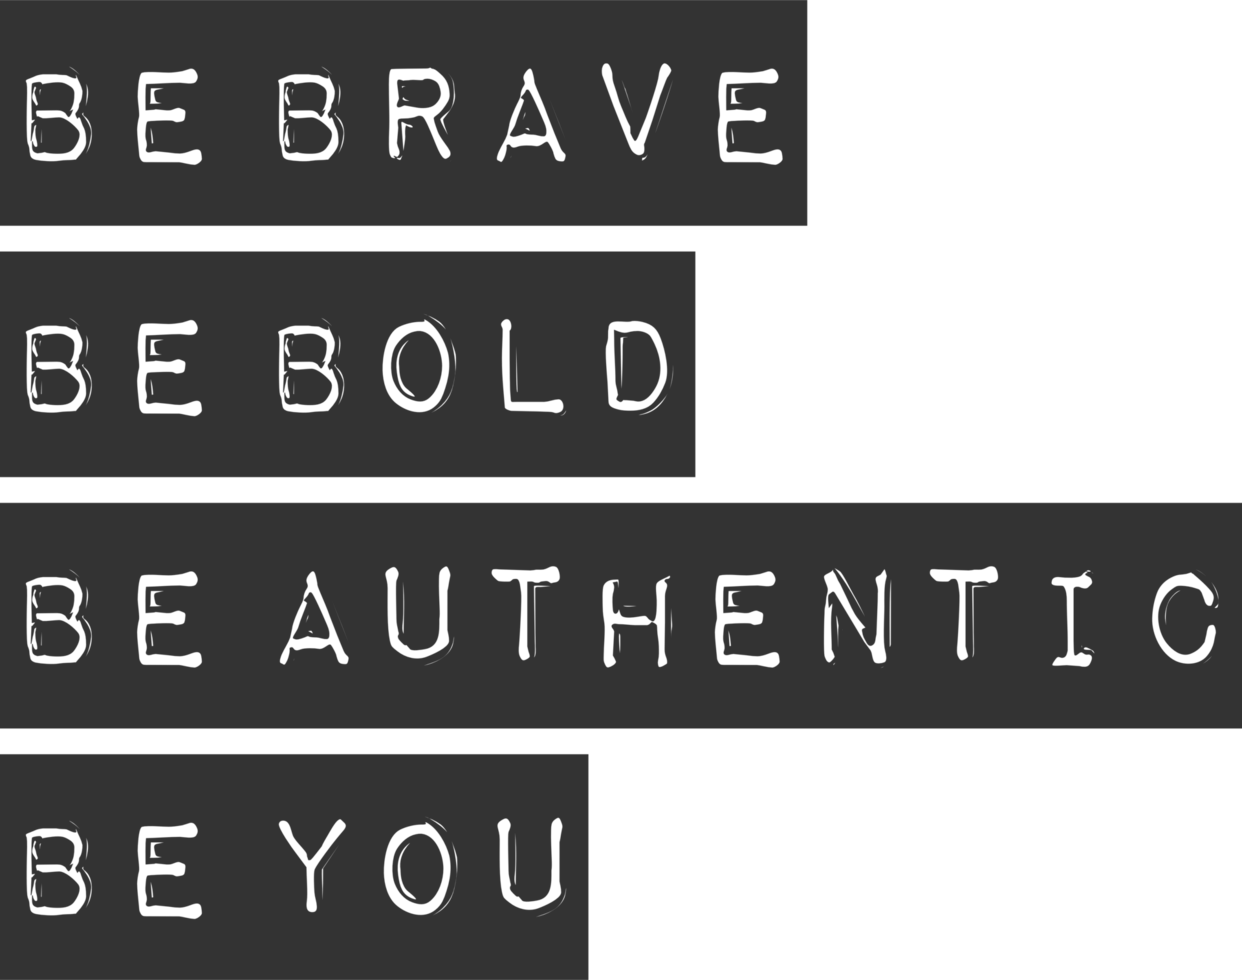 essere coraggioso, essere grassetto, essere autentico, essere voi, motivazionale tipografia citazione design. png